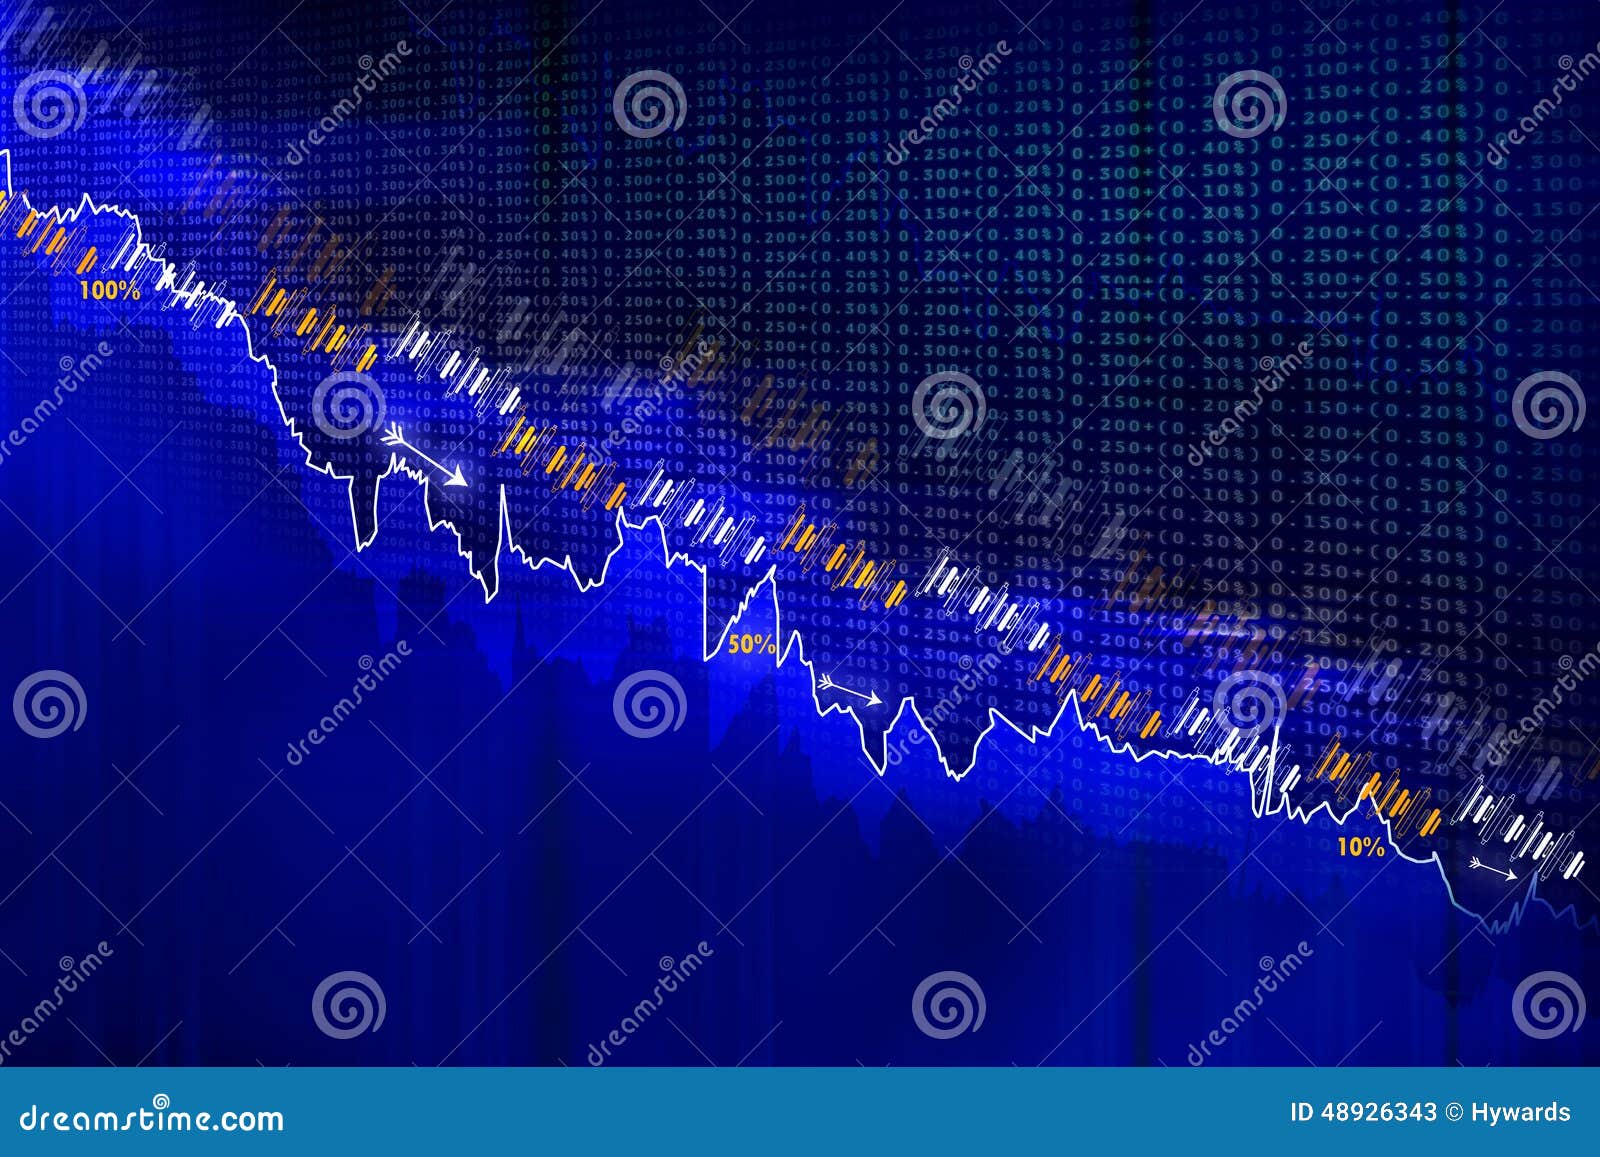 economical stock market graph